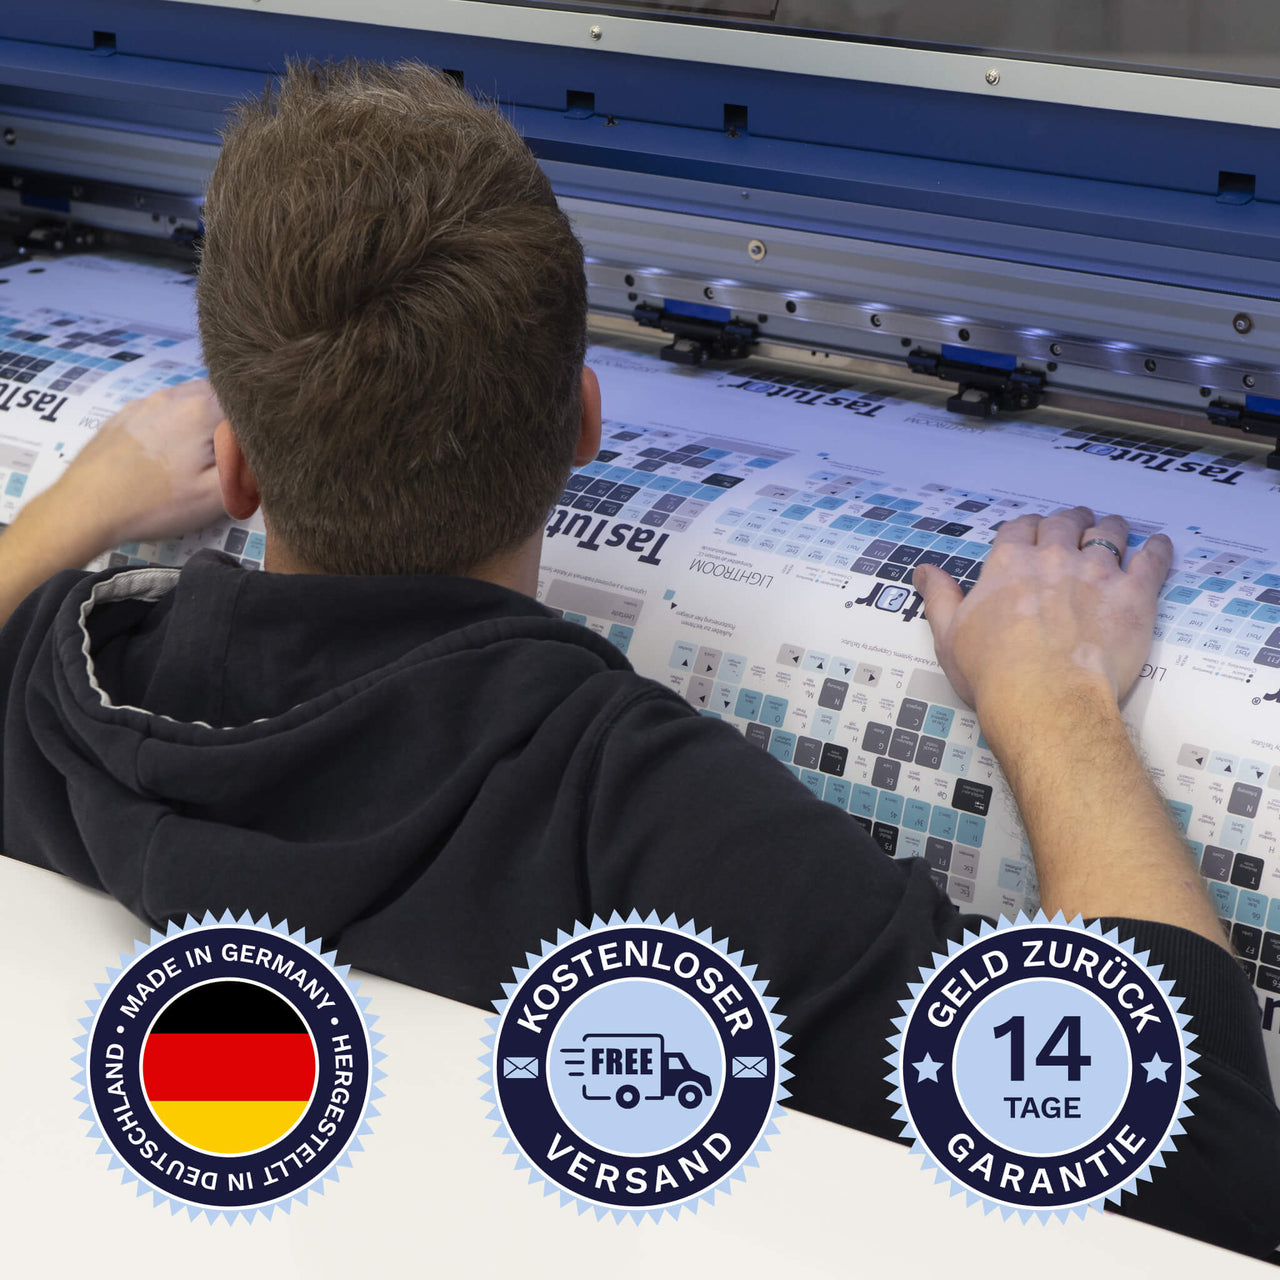 Bitwig Studio Tastaturaufkleber werden in Deutschland hergestellt. Der Versand ist kostenlos und wir gewährleisten 14 Tage Geld zurück Garantie | TasTutor